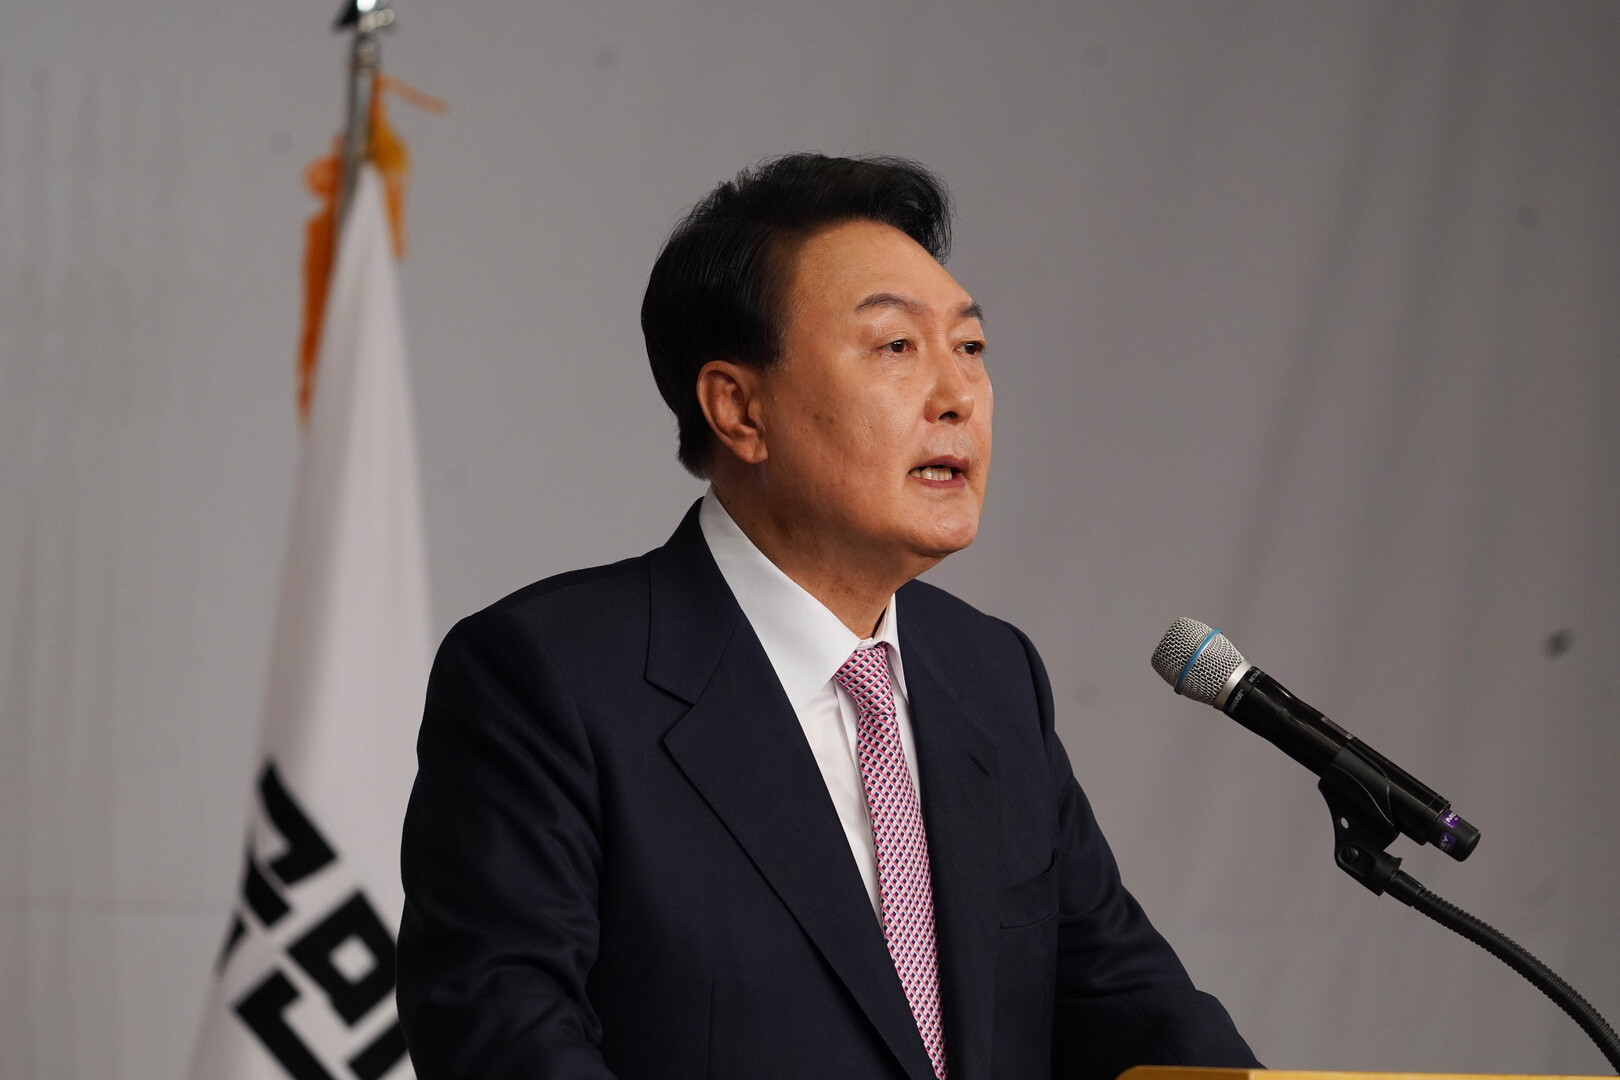 سيئول تتهم بيونغ يانغ بانتهاك اتفاقية الحد من التوتر بين الكوريتين